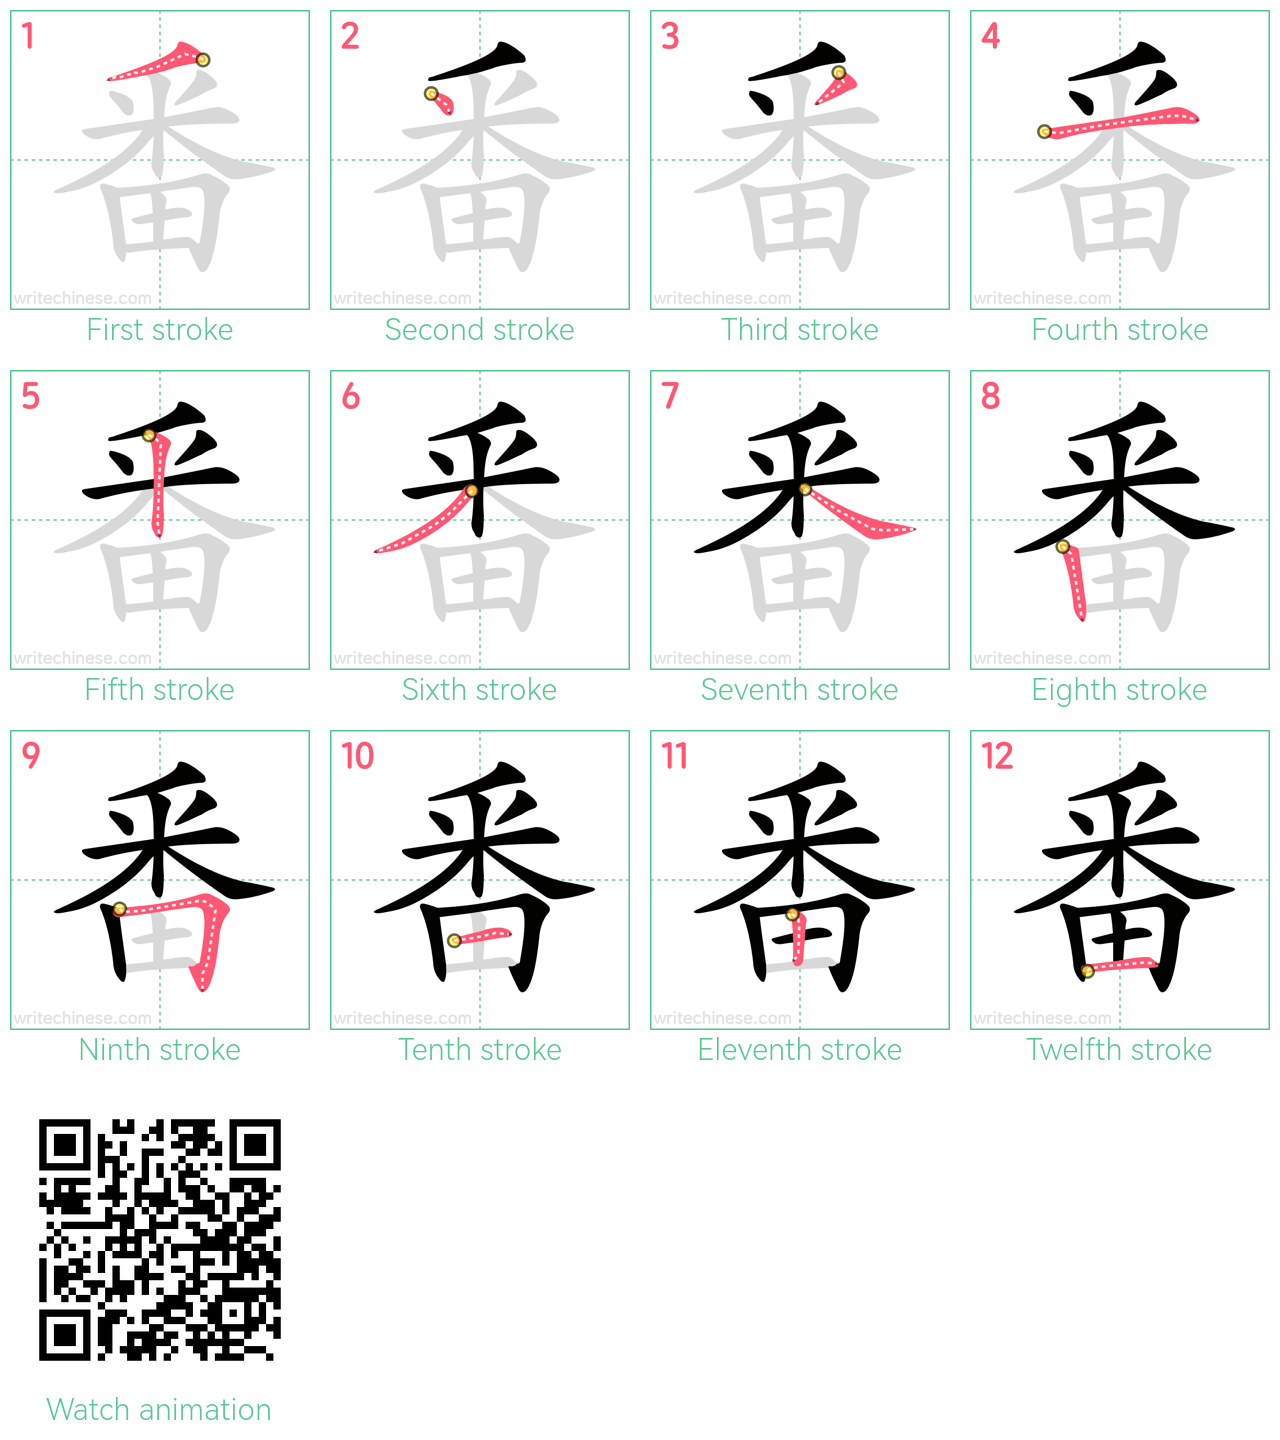 番 step-by-step stroke order diagrams